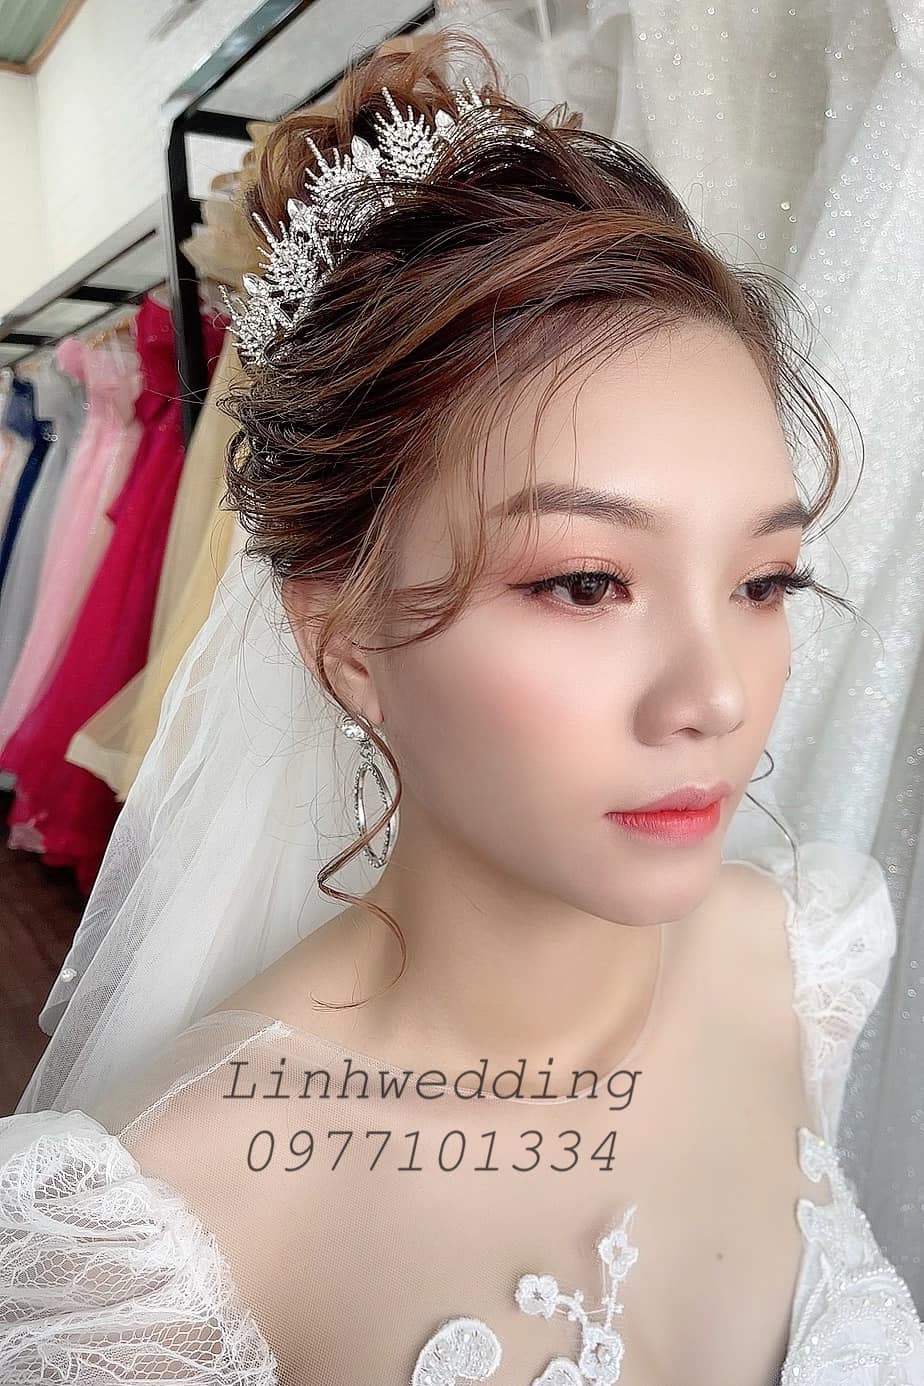 Áo cưới Linh wedding ảnh 2